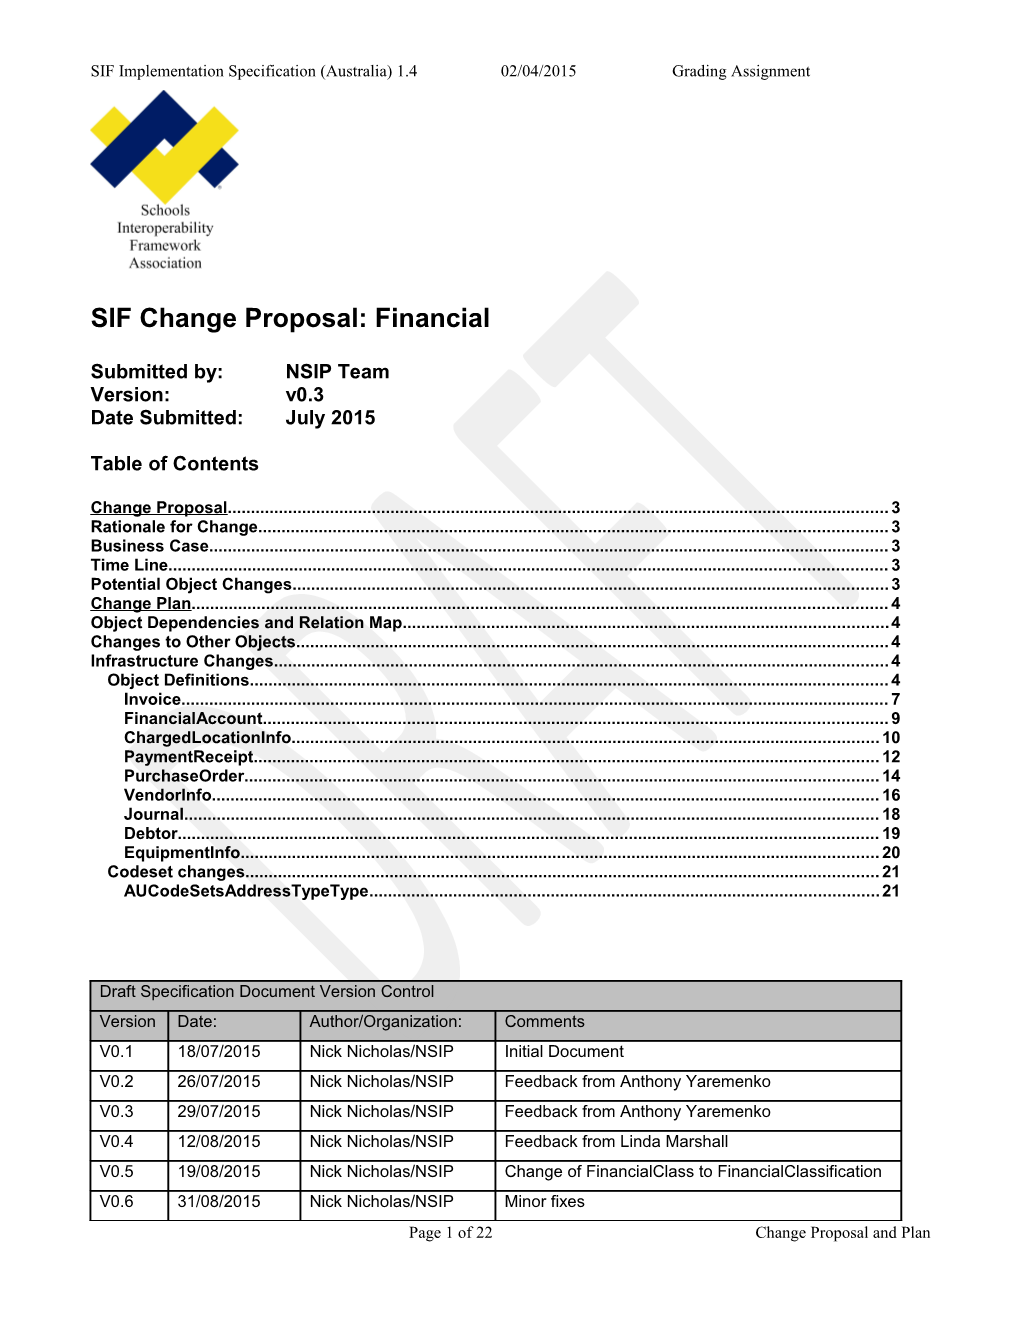 SIF Change Proposal: Financial